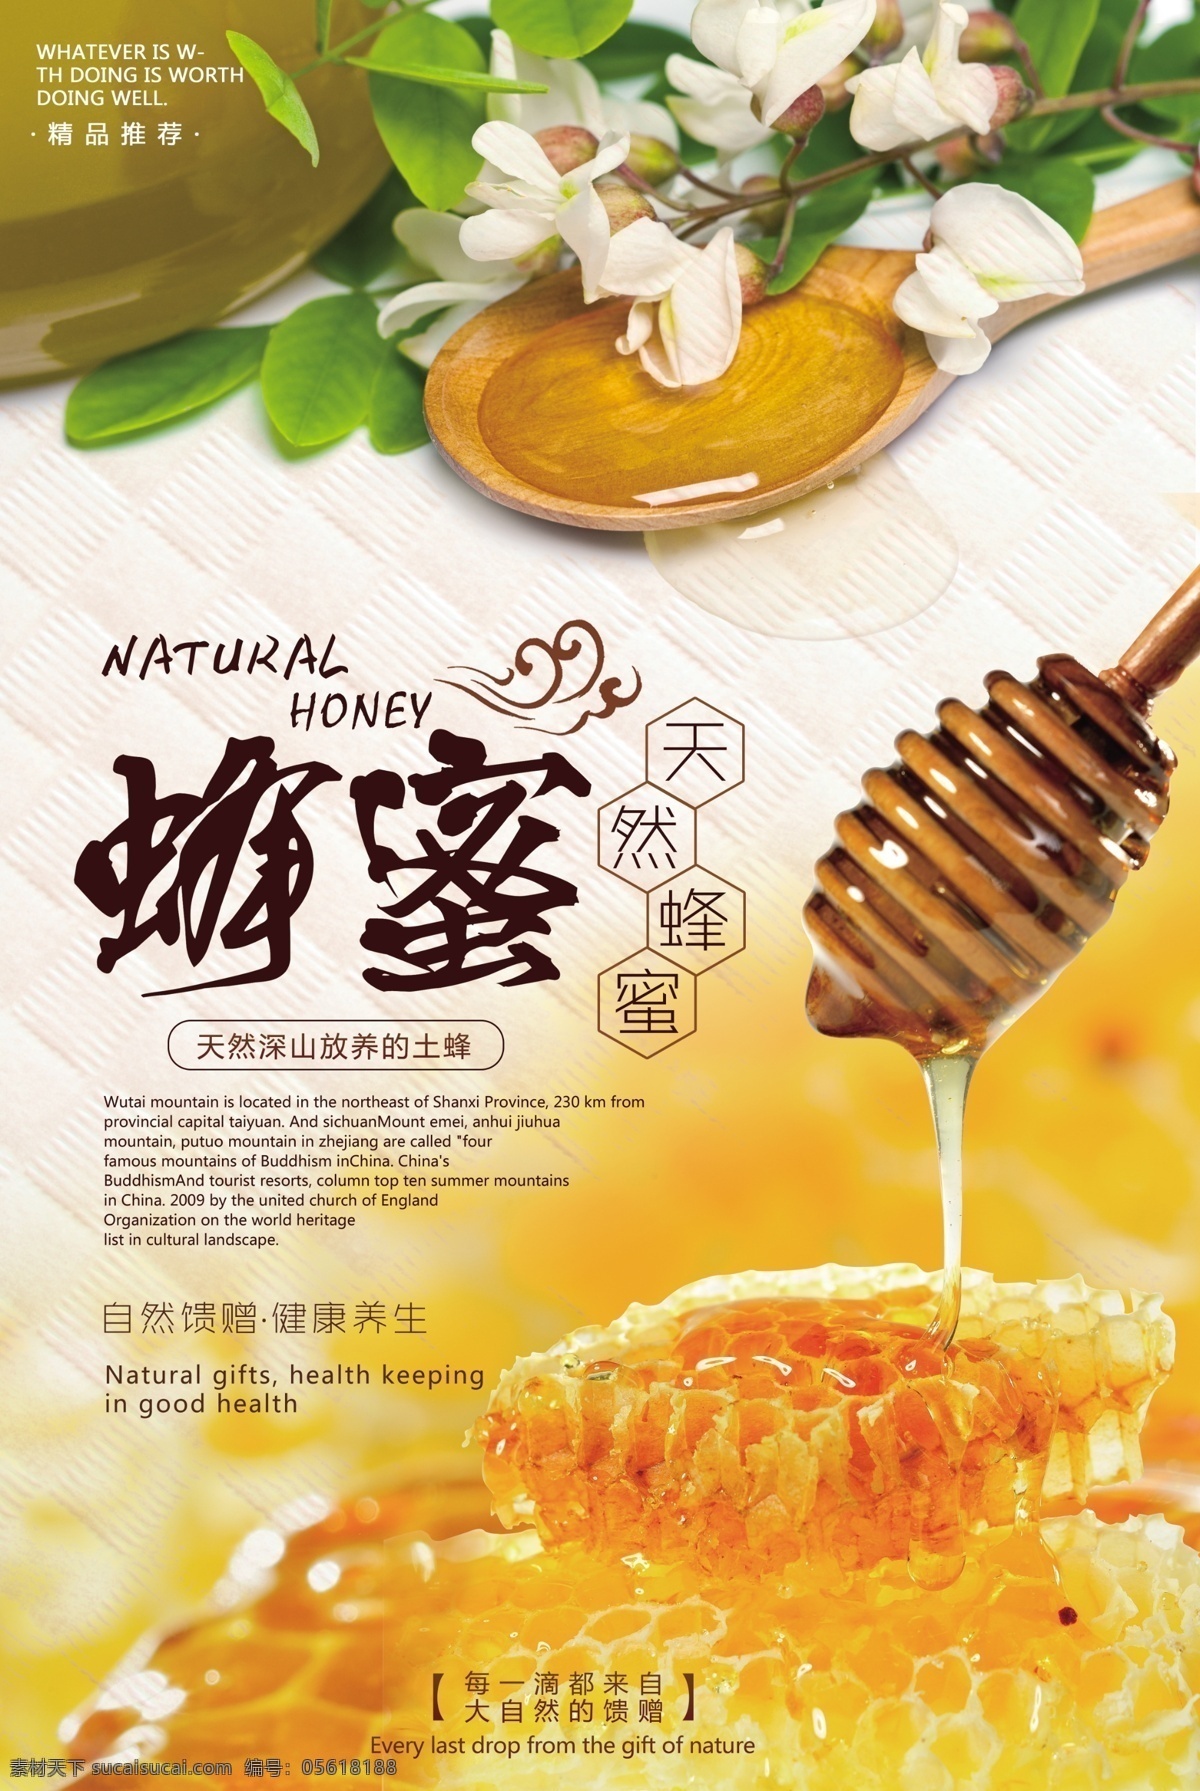 蜂蜜 美食 活动 宣传海报 素材图片 宣传 海报 餐饮美食 类